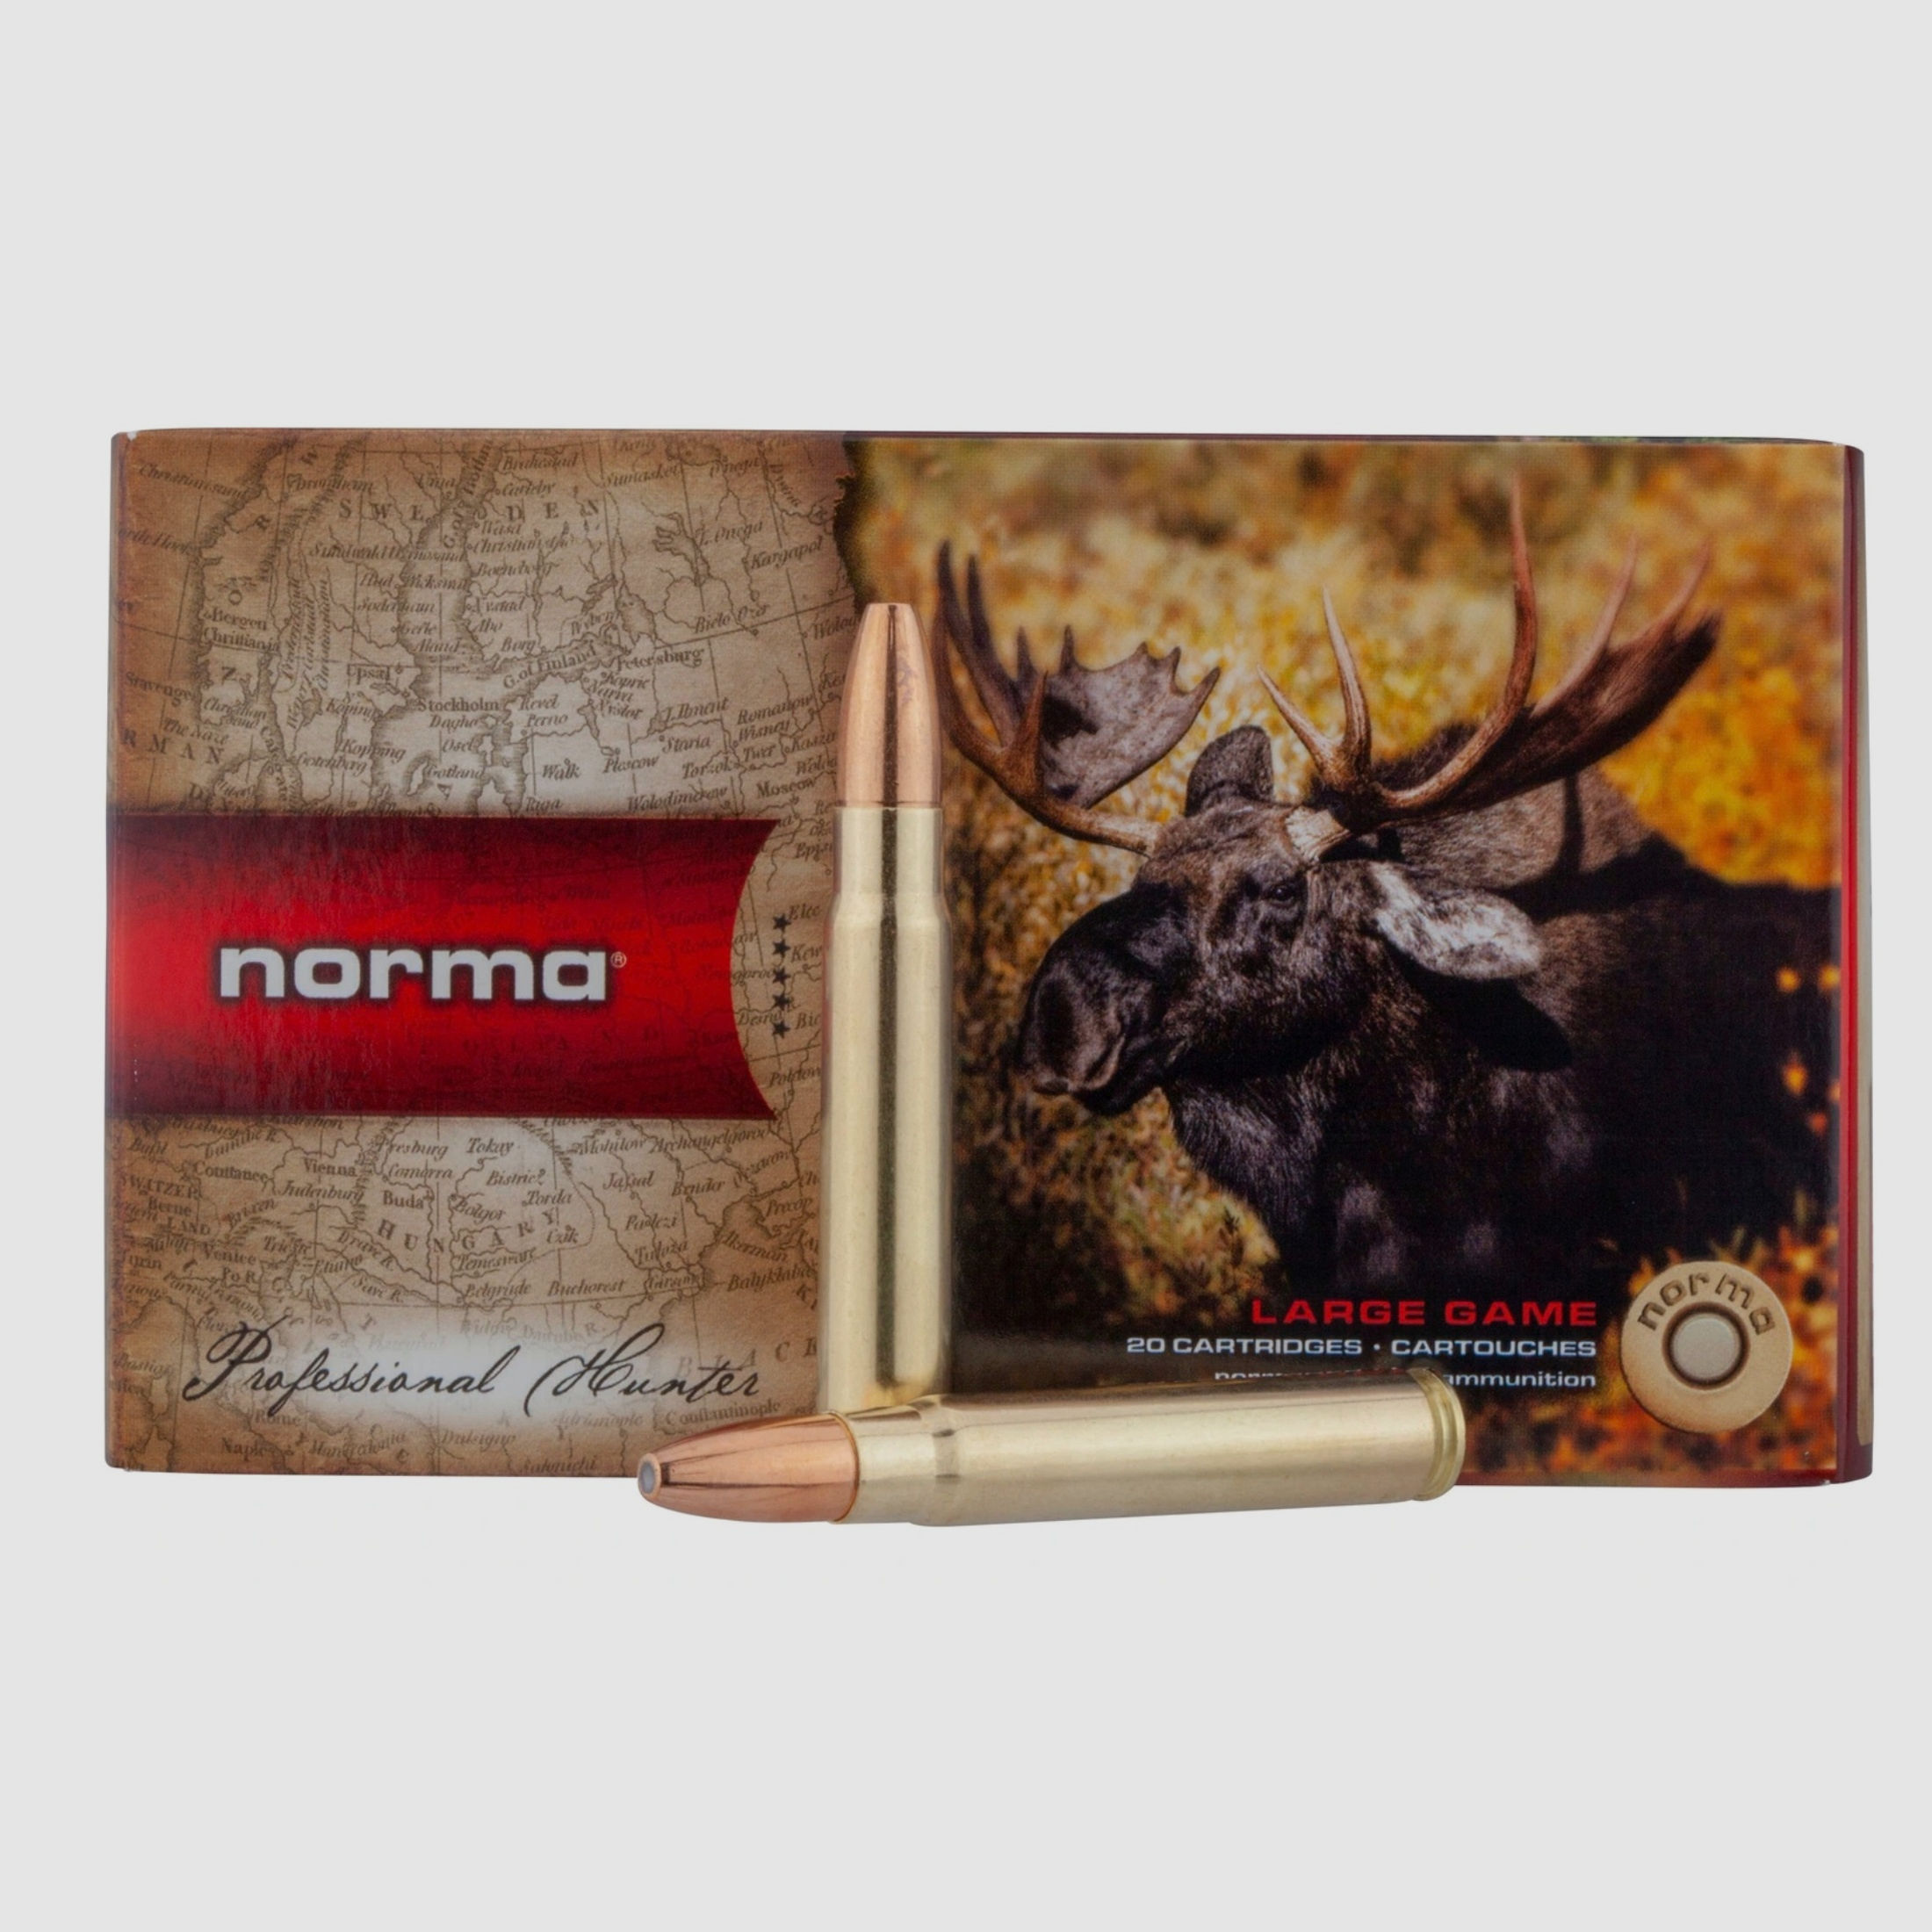 Norma 2315661 9,3x62 Vulkan 15,0g 232 grs. Büchsenmunition